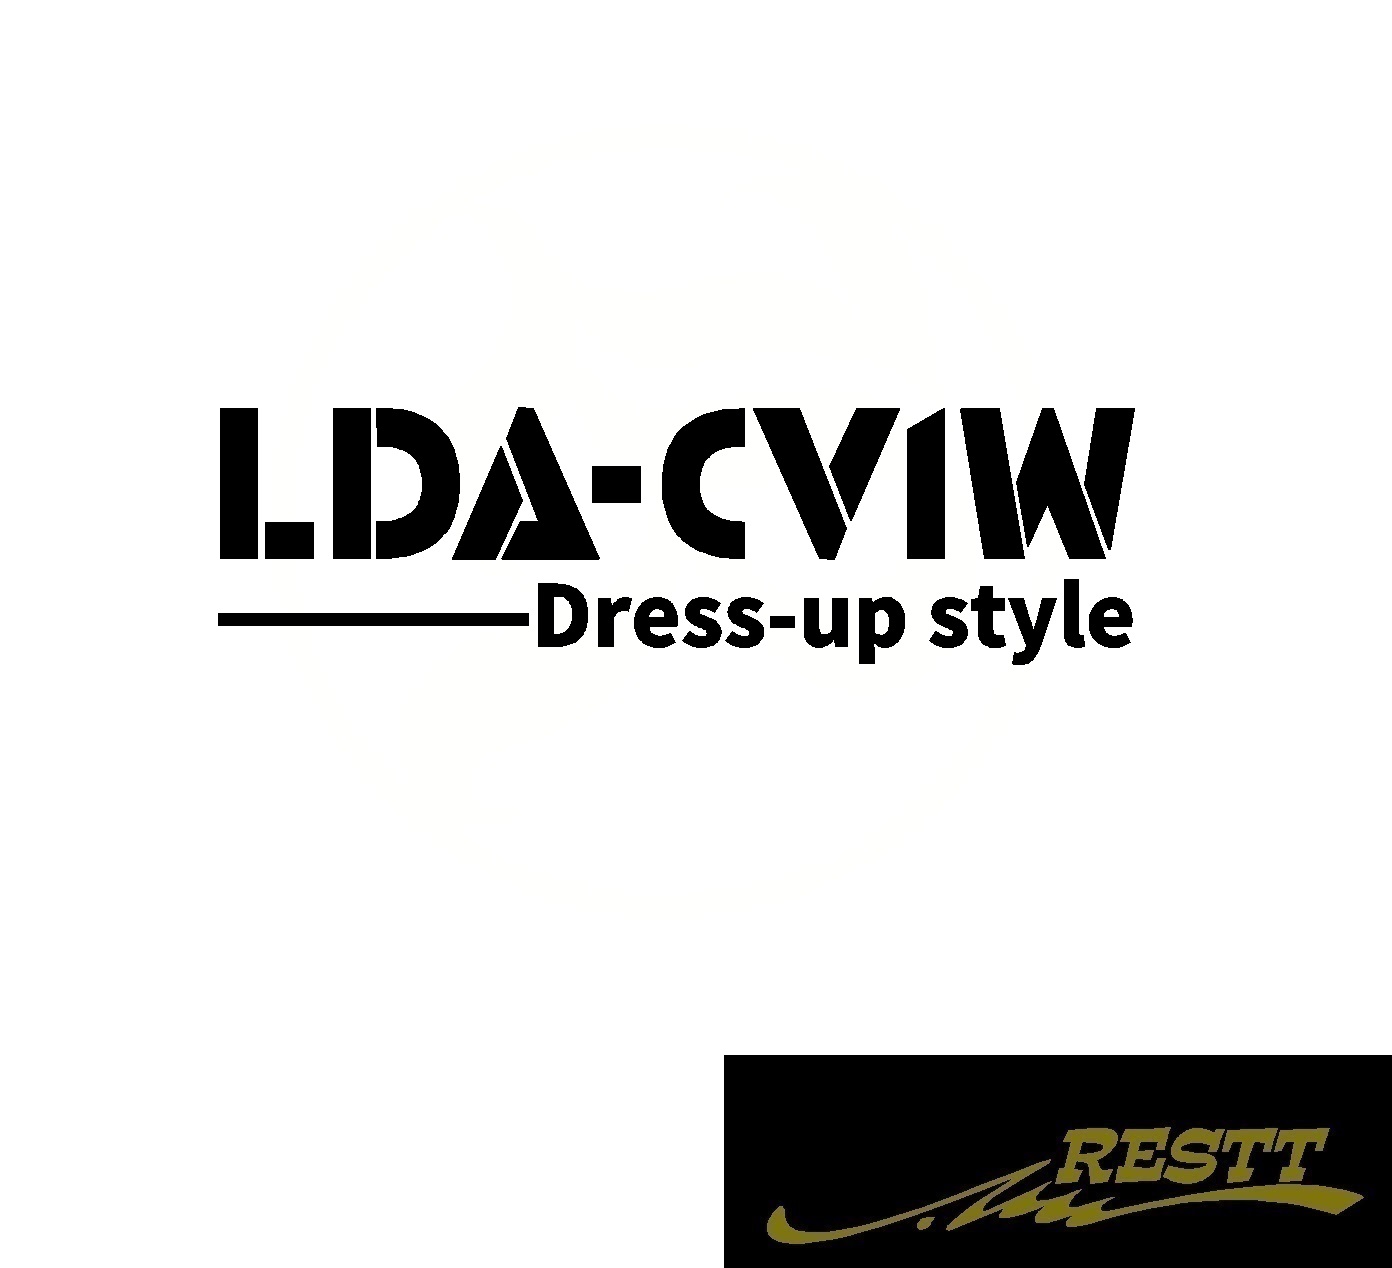 楽天市場 デリカ D 5 Lda Cv1w ドレスアップスタイル ロゴ カッティングステッカー 大サイズ おしゃれ デザイン かっこいい ステッカー ミツビシ 三菱 型式 Restt 楽天市場店